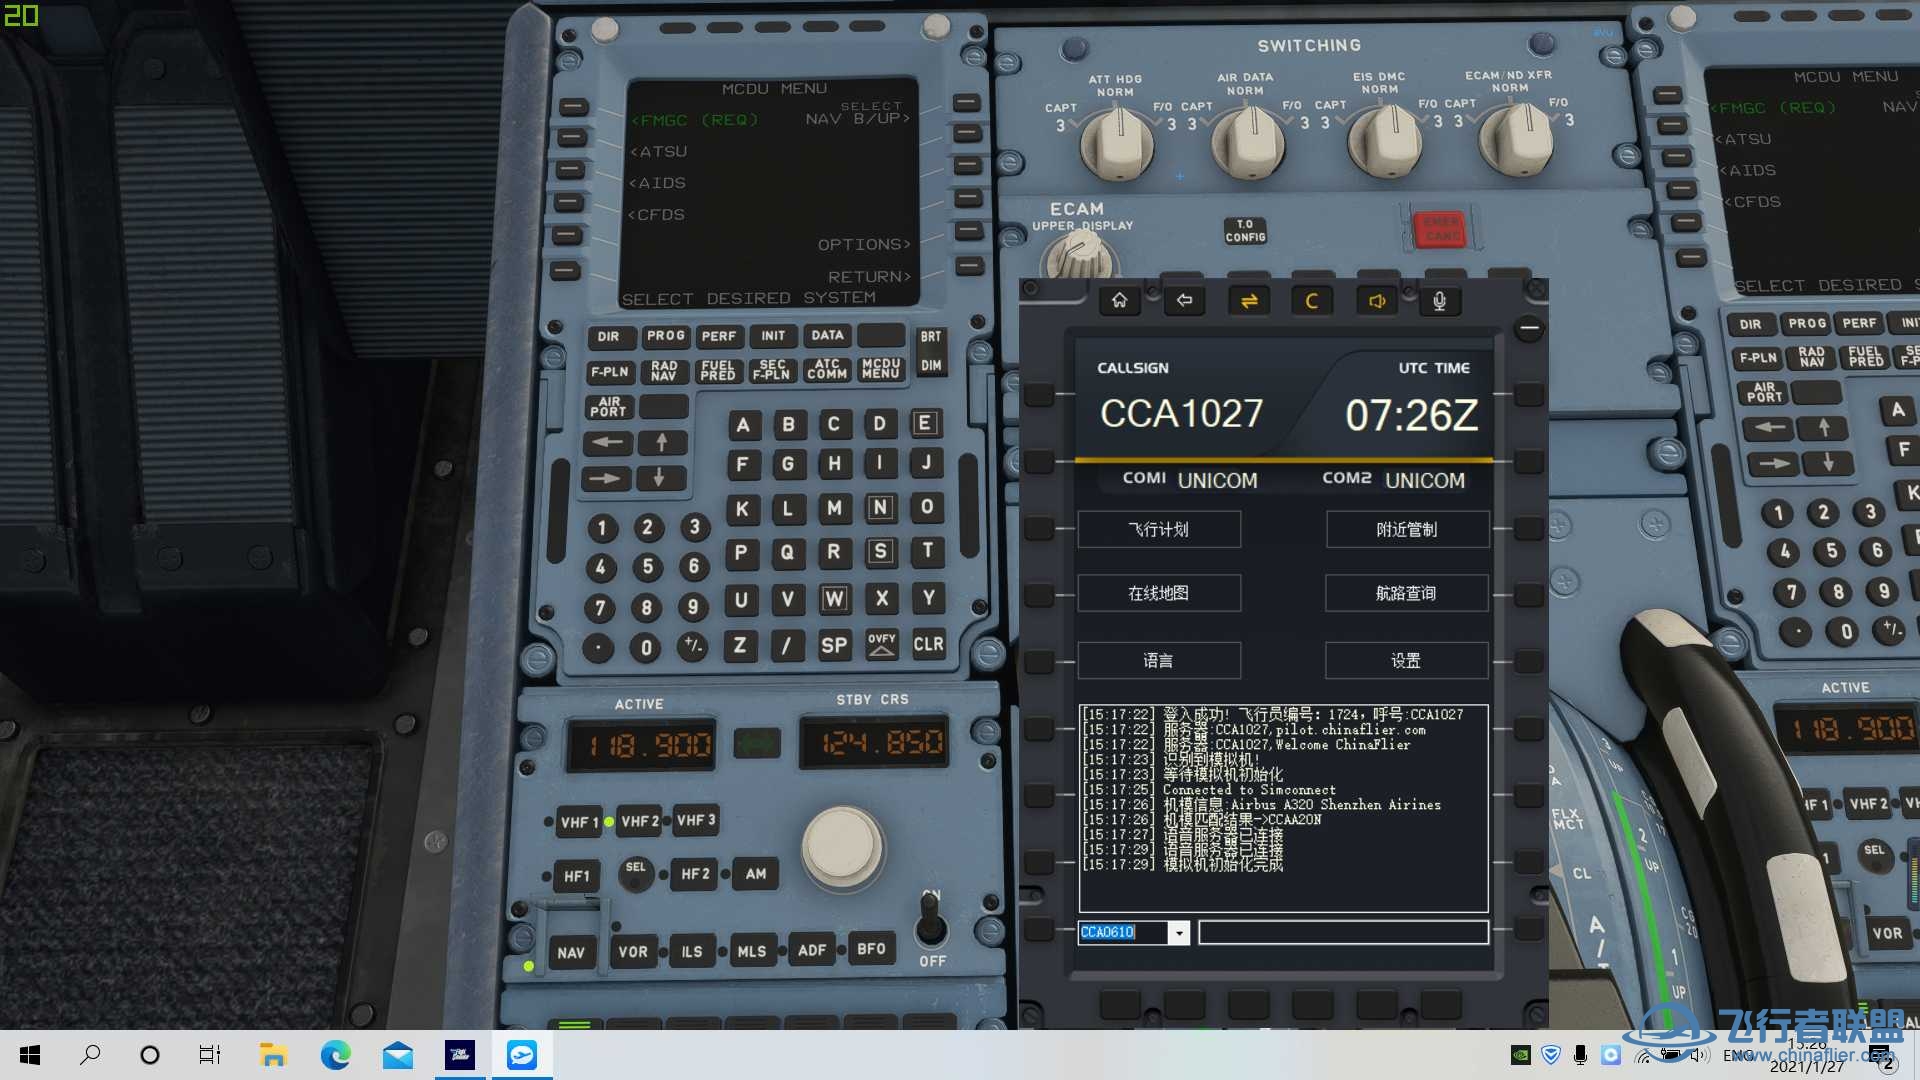 【求助】连飞软件COM1 COM2一直显示UNICOM-4078 